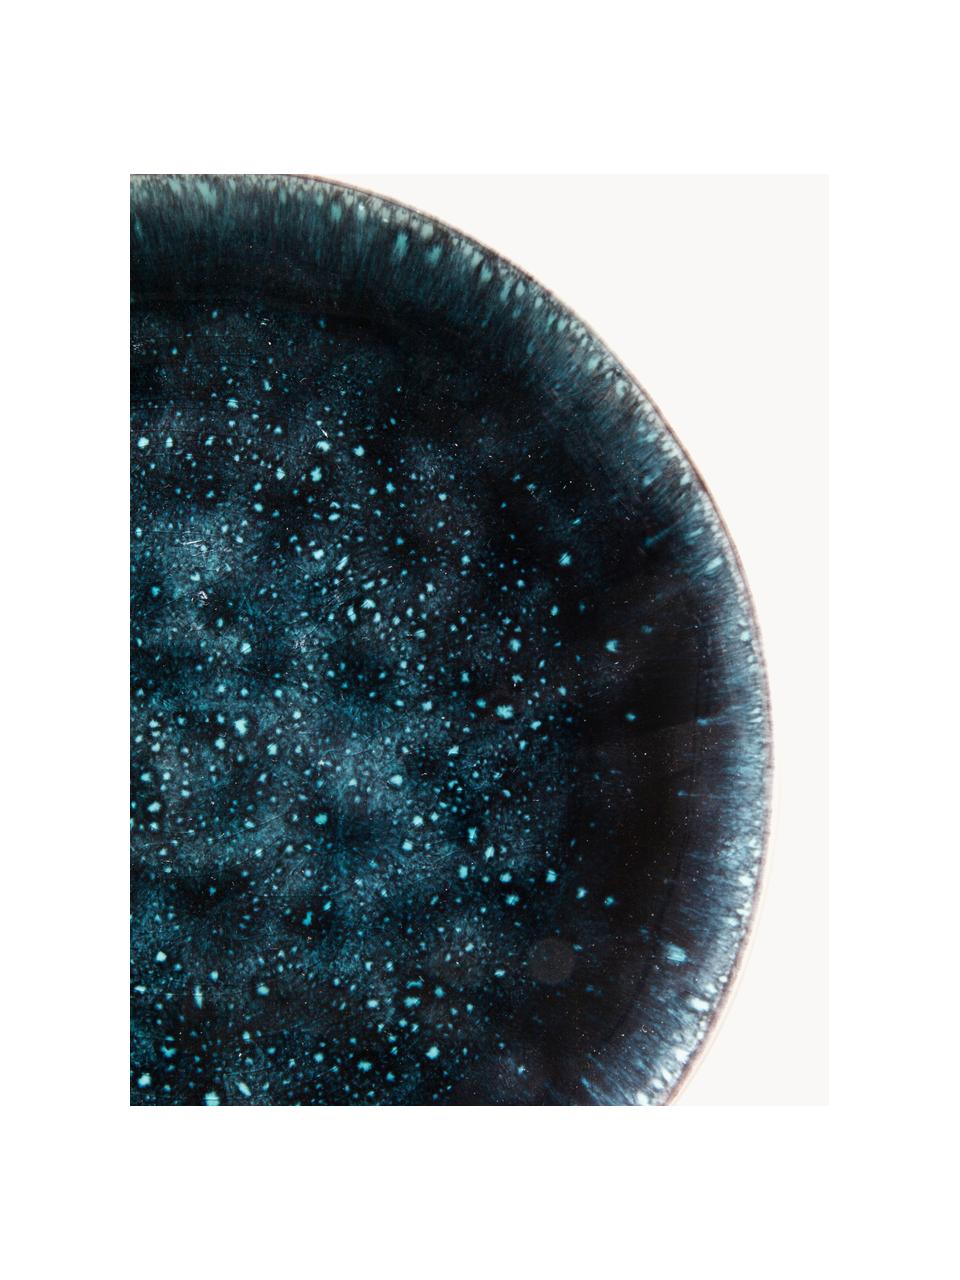 Platos postre artesanales Mustique, 4 uds., Cerámica de gres esmaltada, Turquesa, azul oscuro, Ø 21 cm